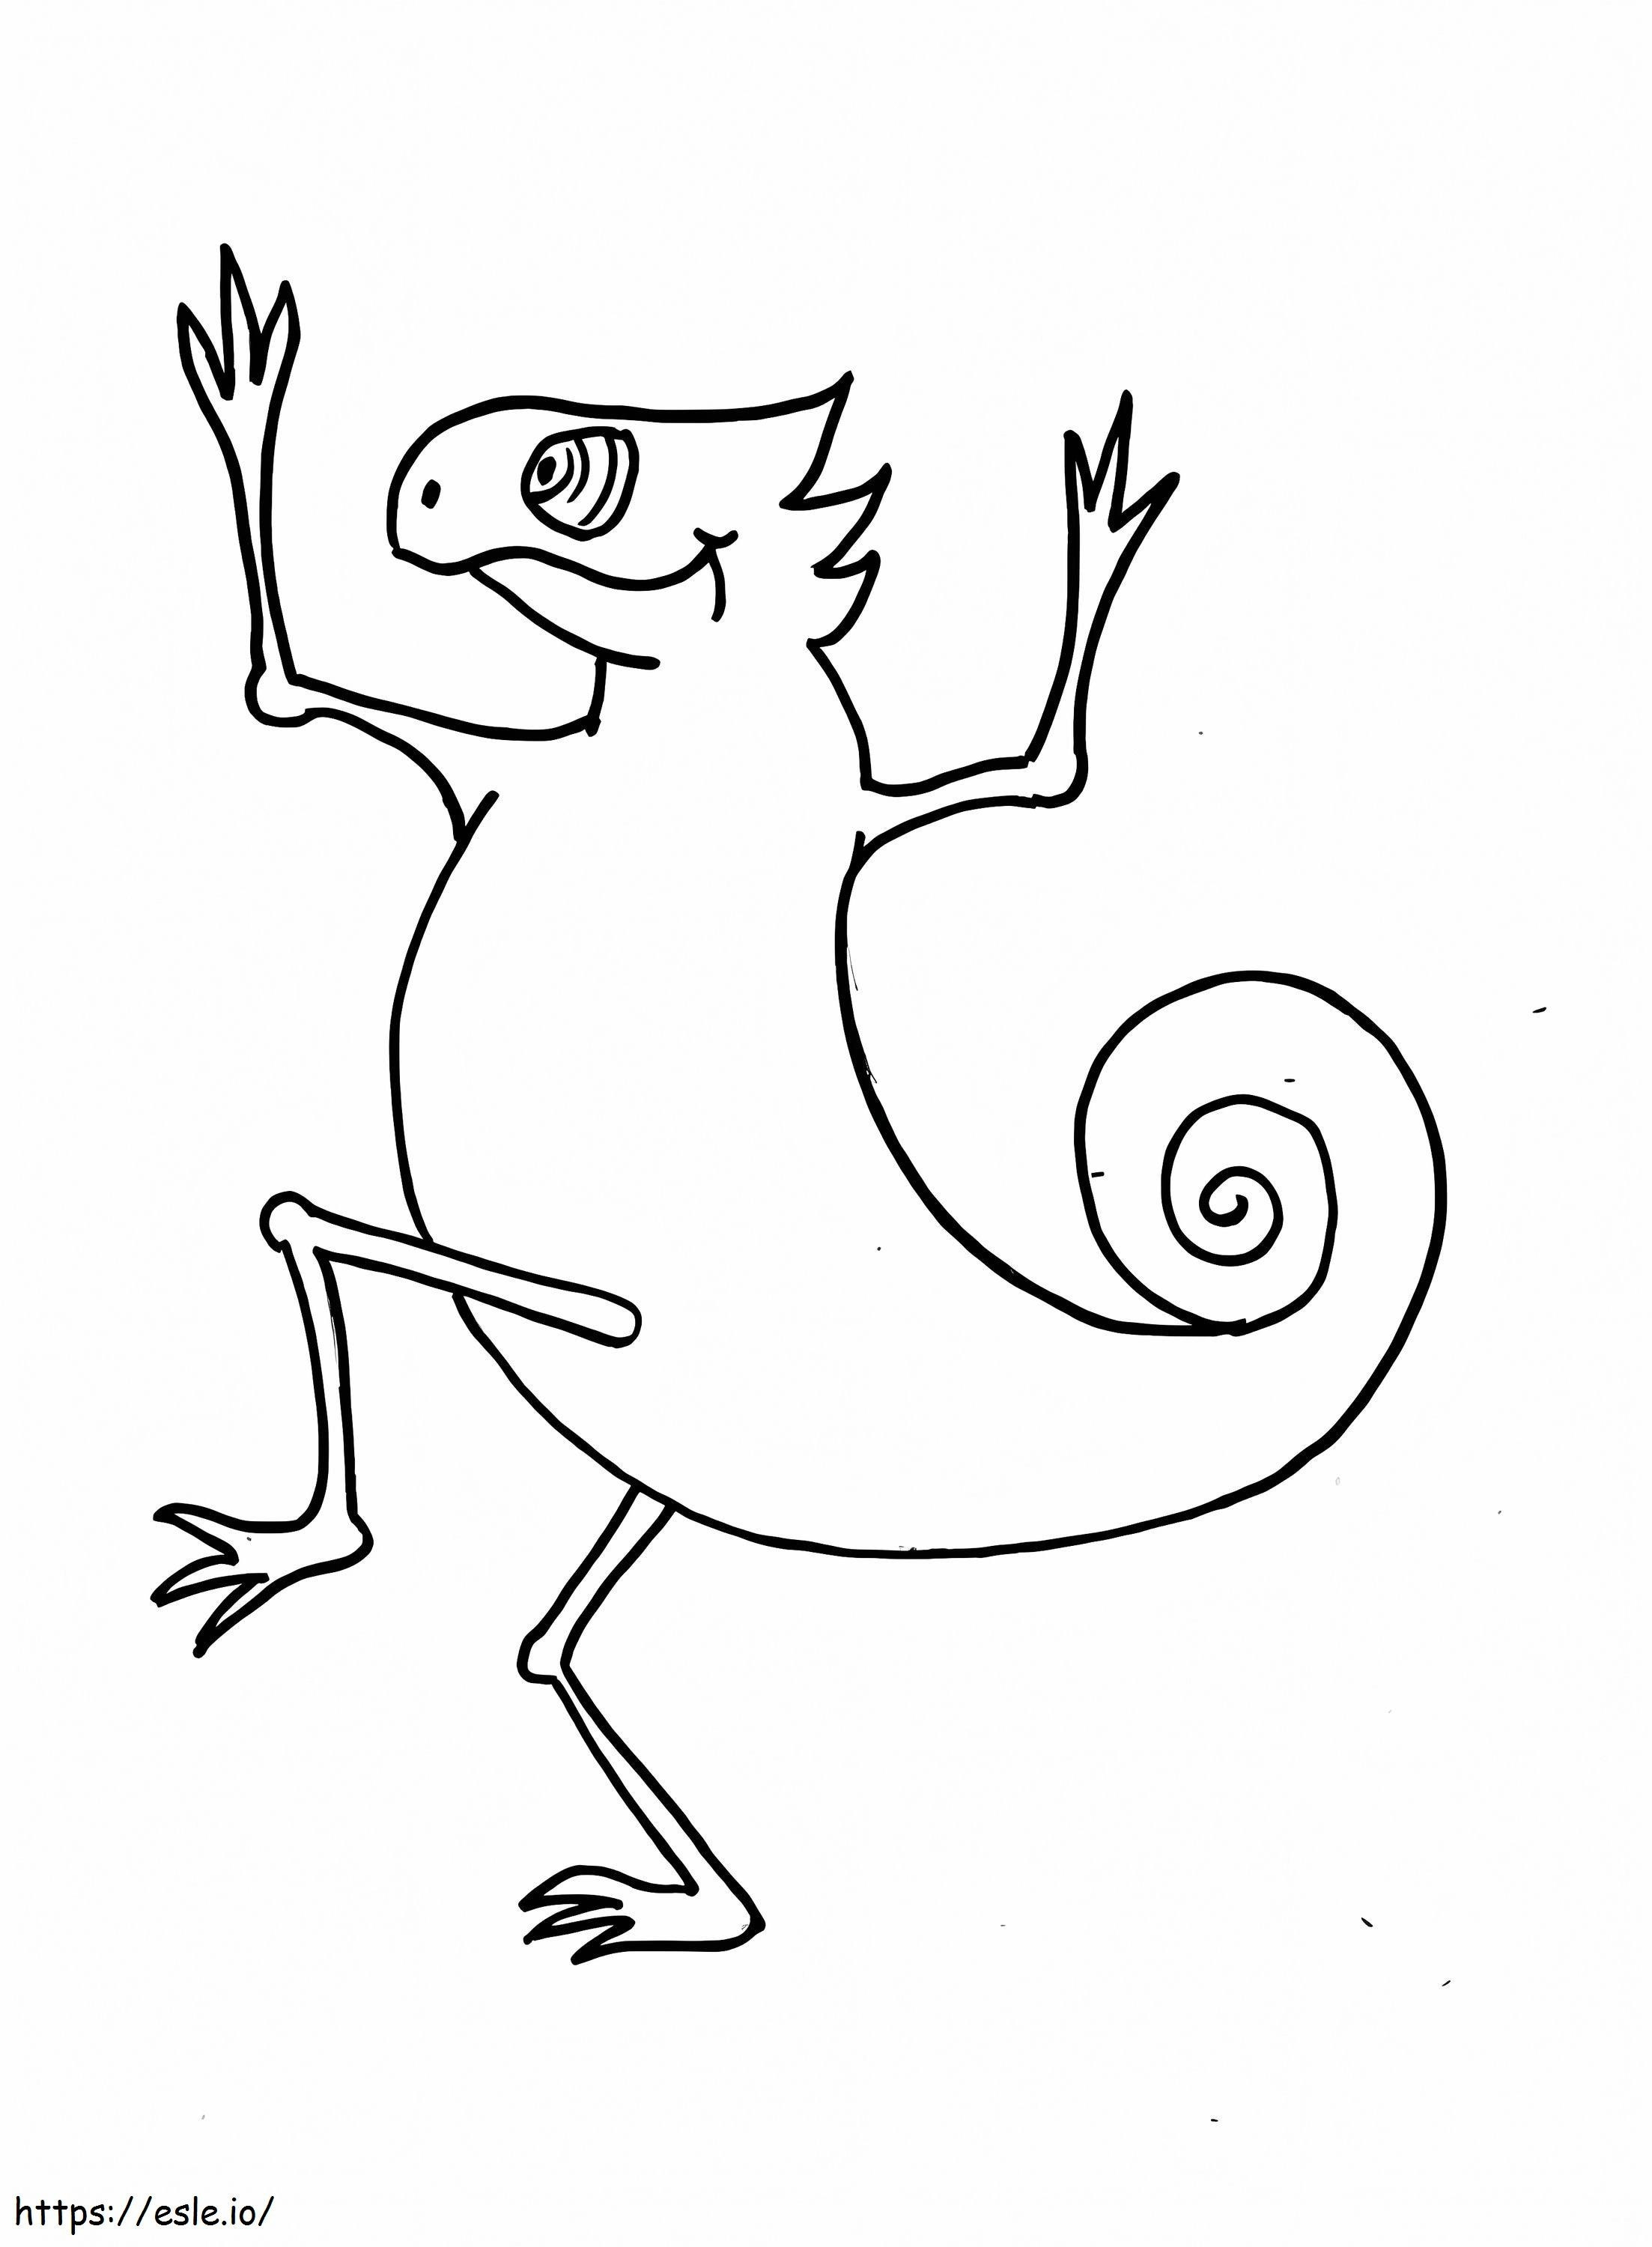 Chamäleon-Zeichnung ausmalbilder